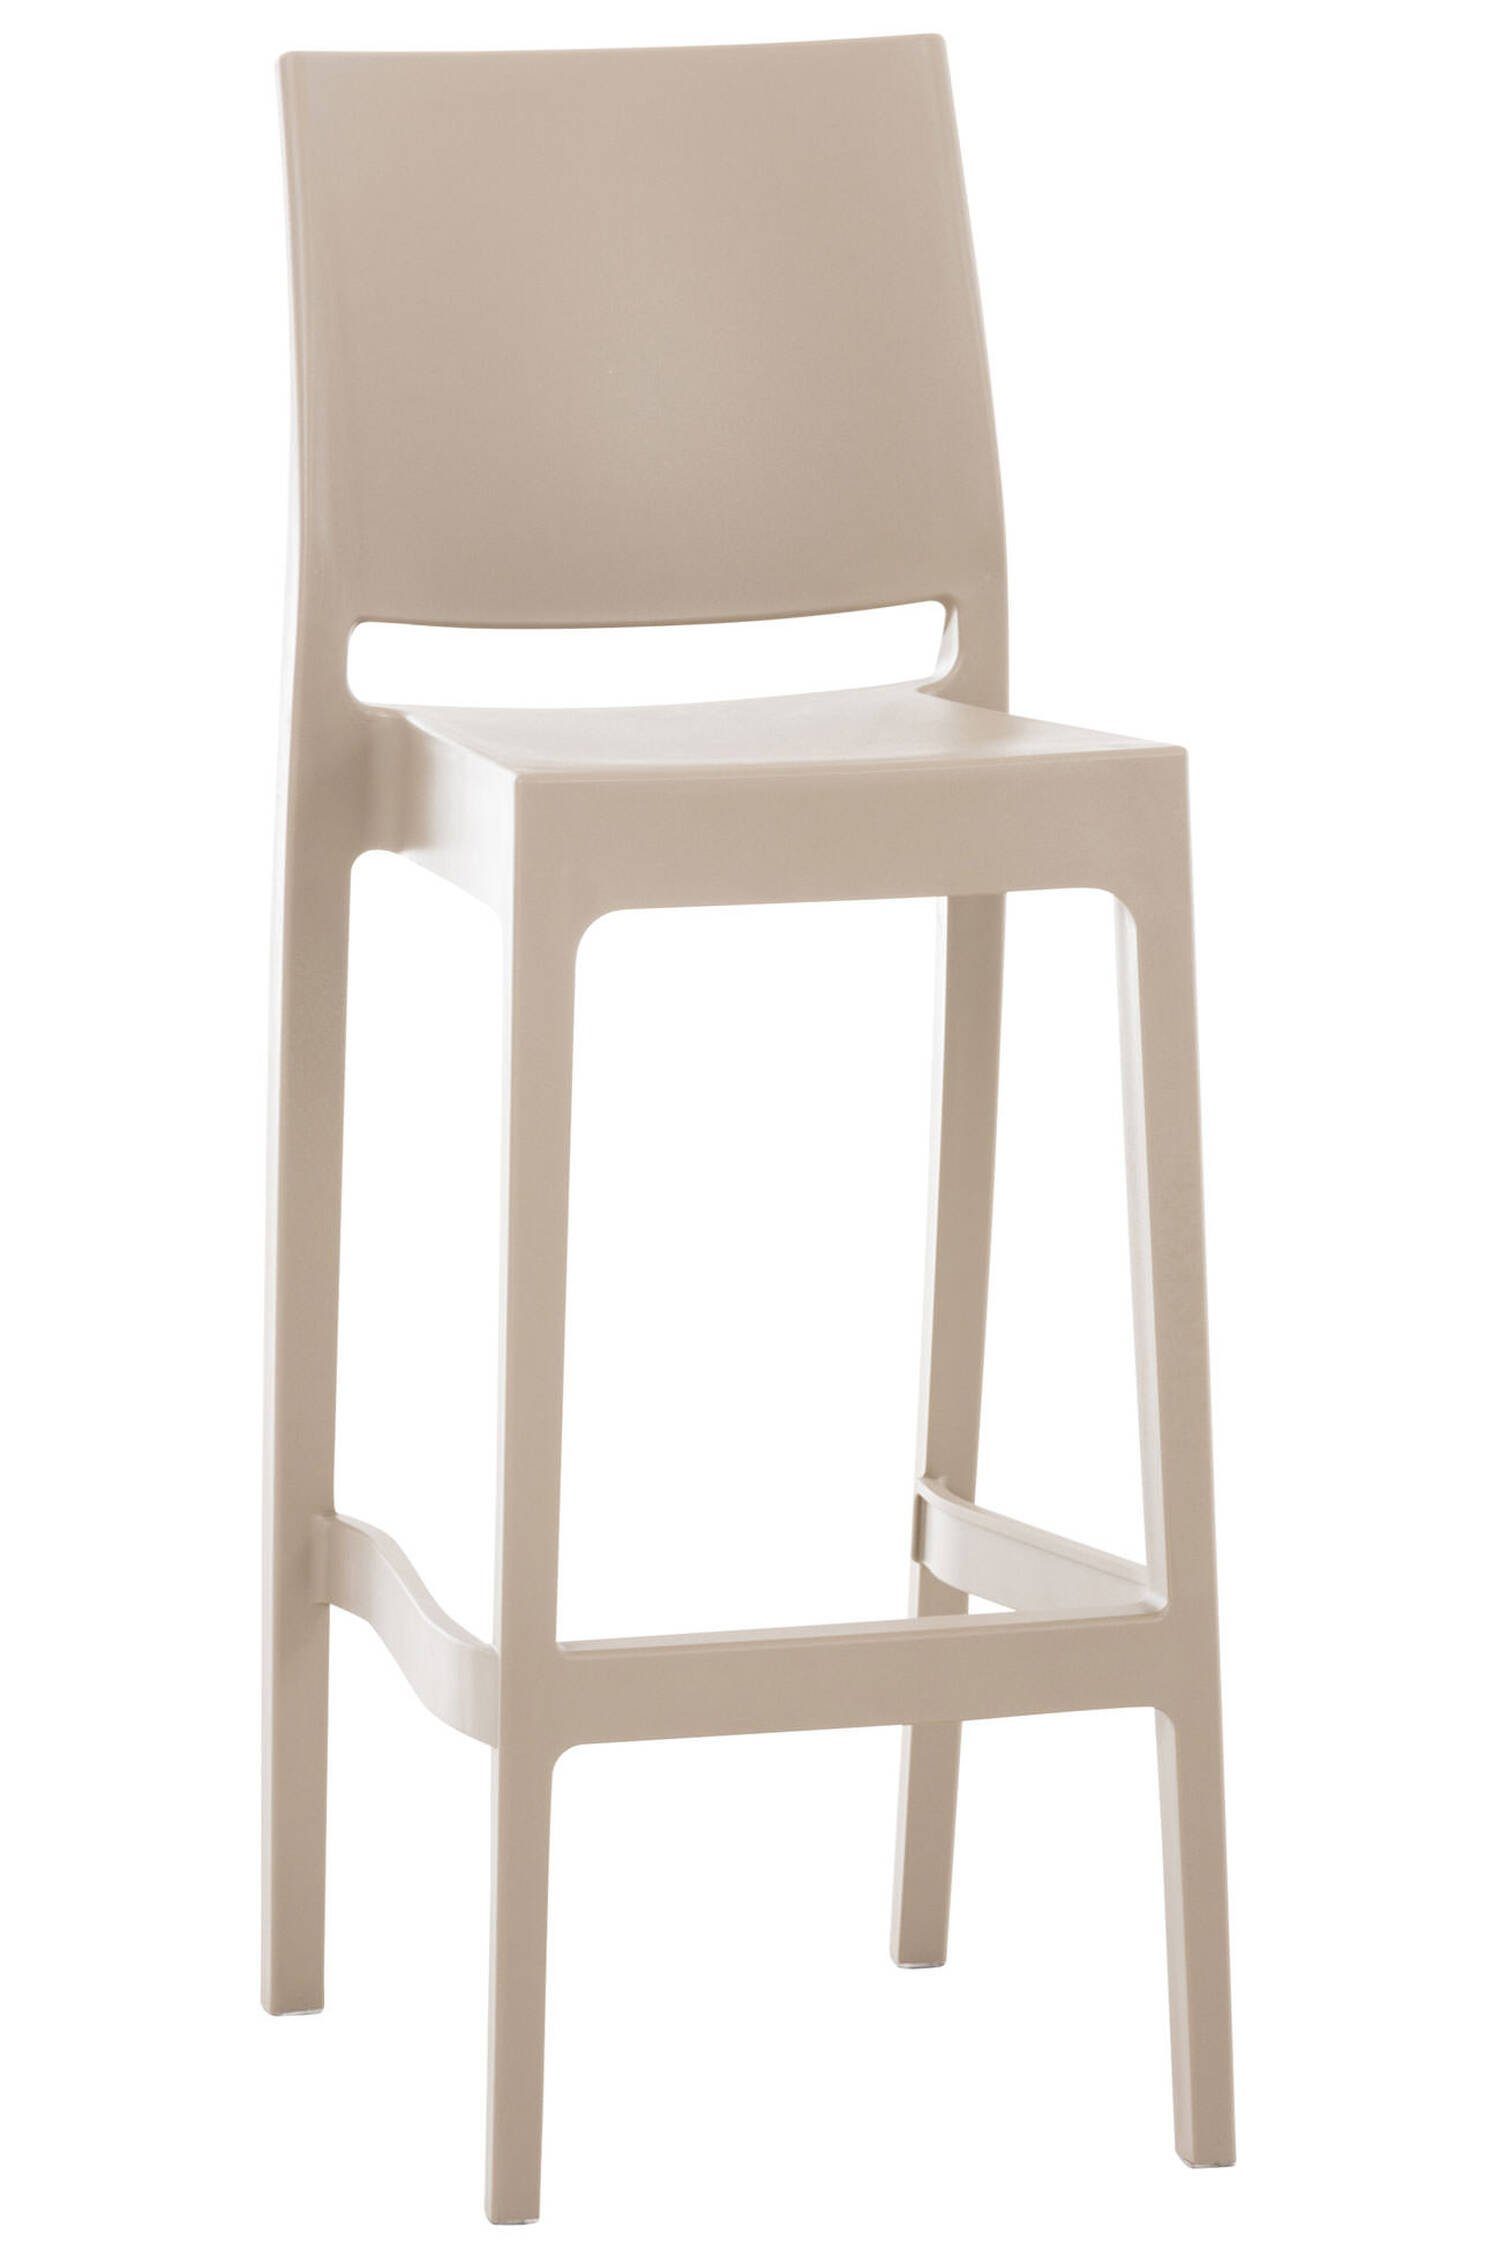 & Theke Fußstütze Sitzfläche: Schlamm TPFLiving - für angenehmer Kunststoff Gestell Küche), Kunststoff Hocker Maya - (mit Barhocker